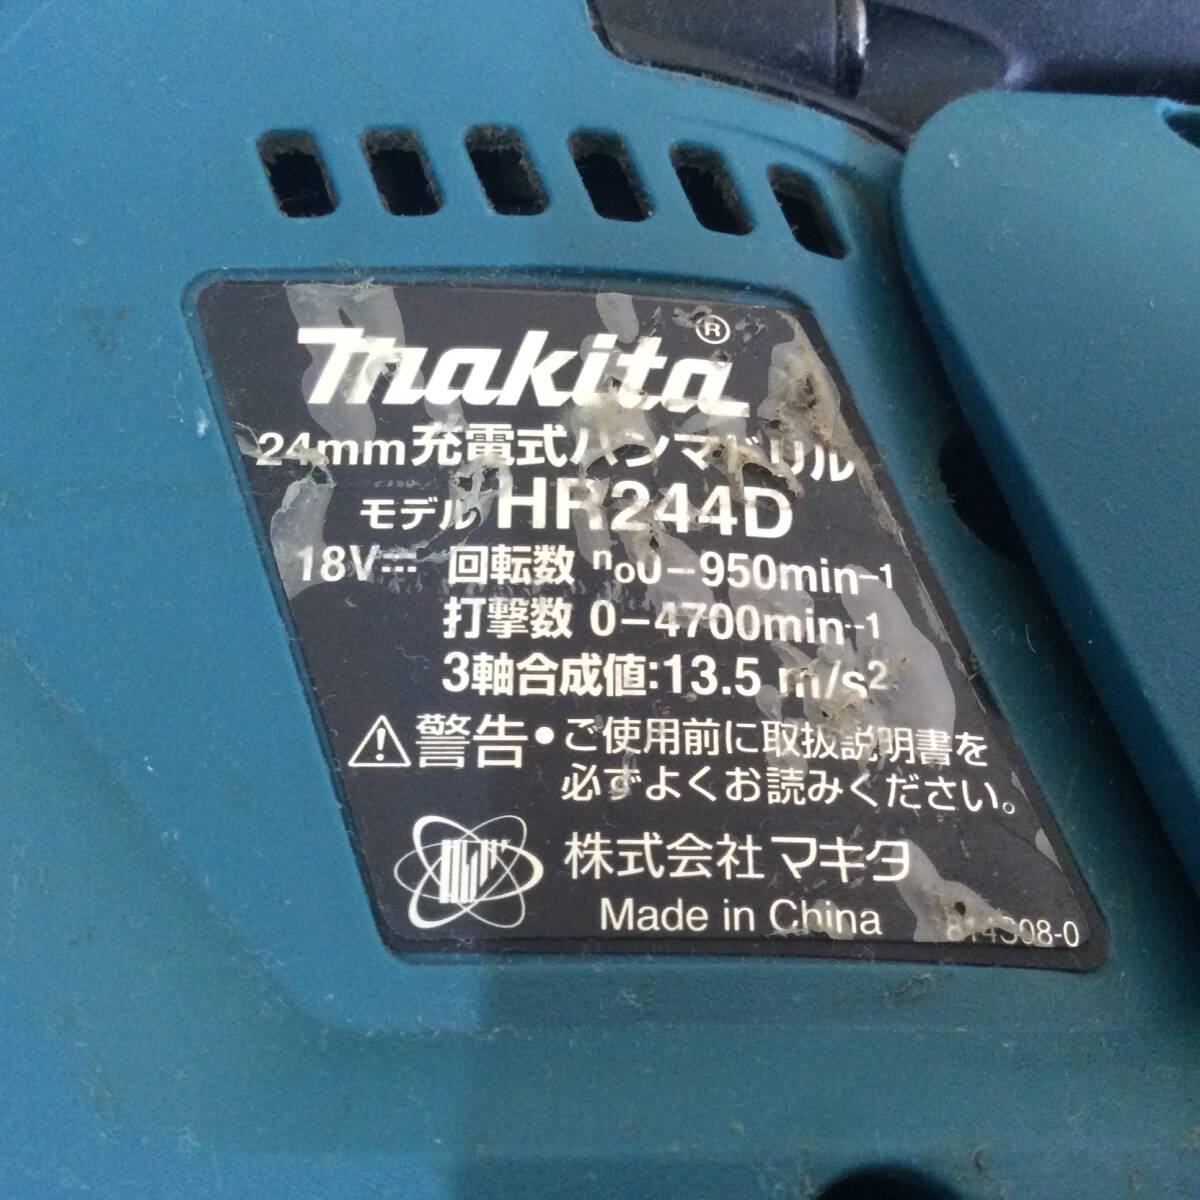 【TH-2150】中古品 makita マキタ 充電式ハンマドリル HR244D+集じんシステムDX01 純正バッテリーBL1860B×2個 充電器付の画像5